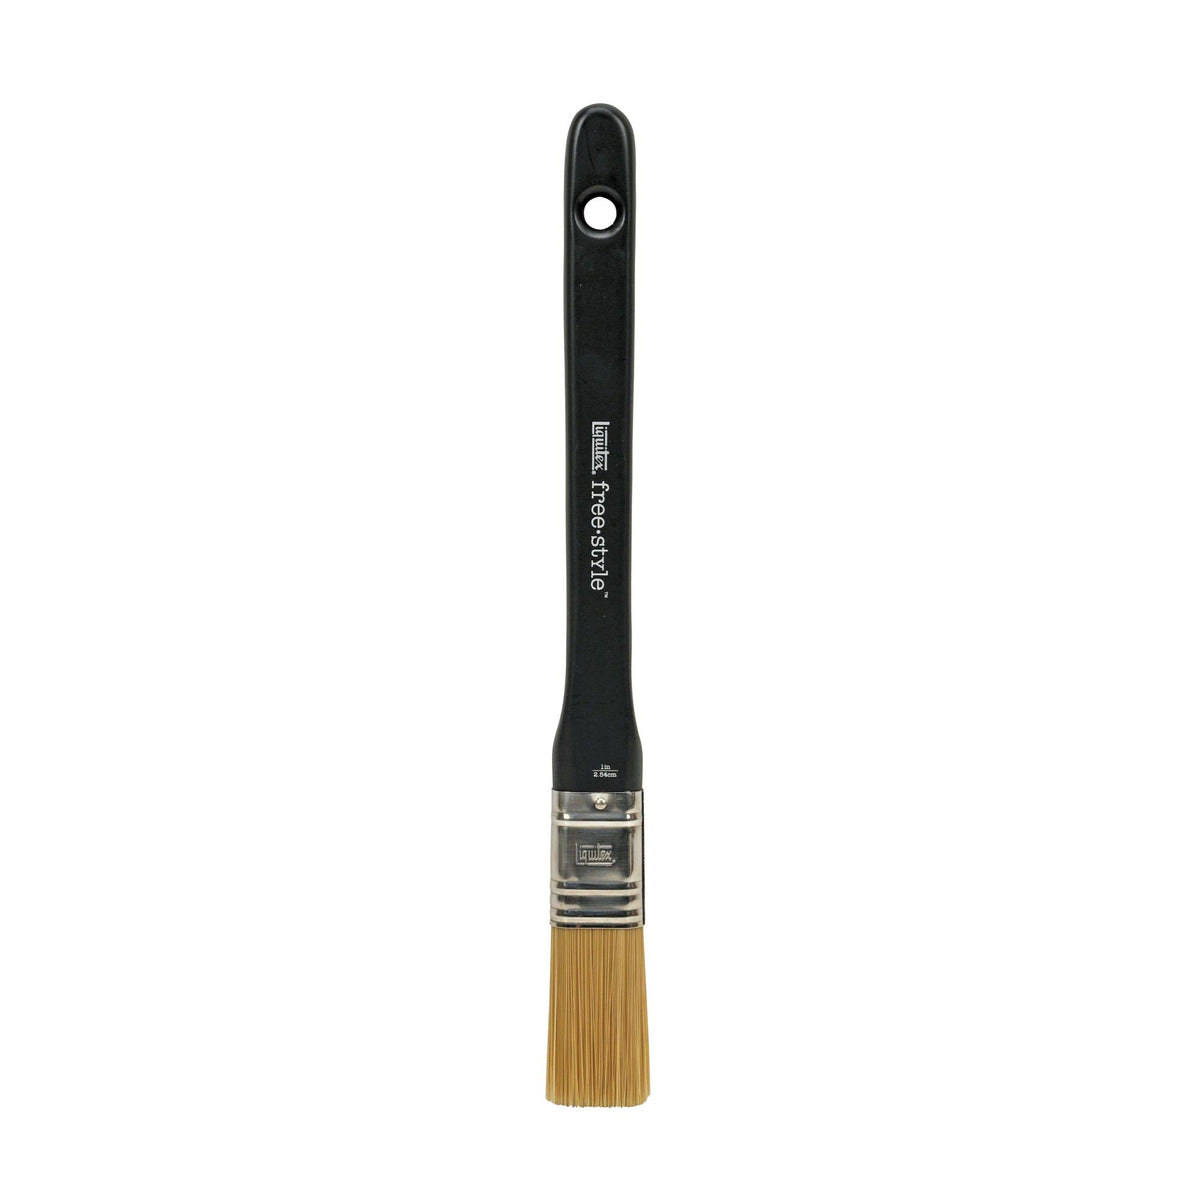 Liquitex Universal Flat brush - 1 inch